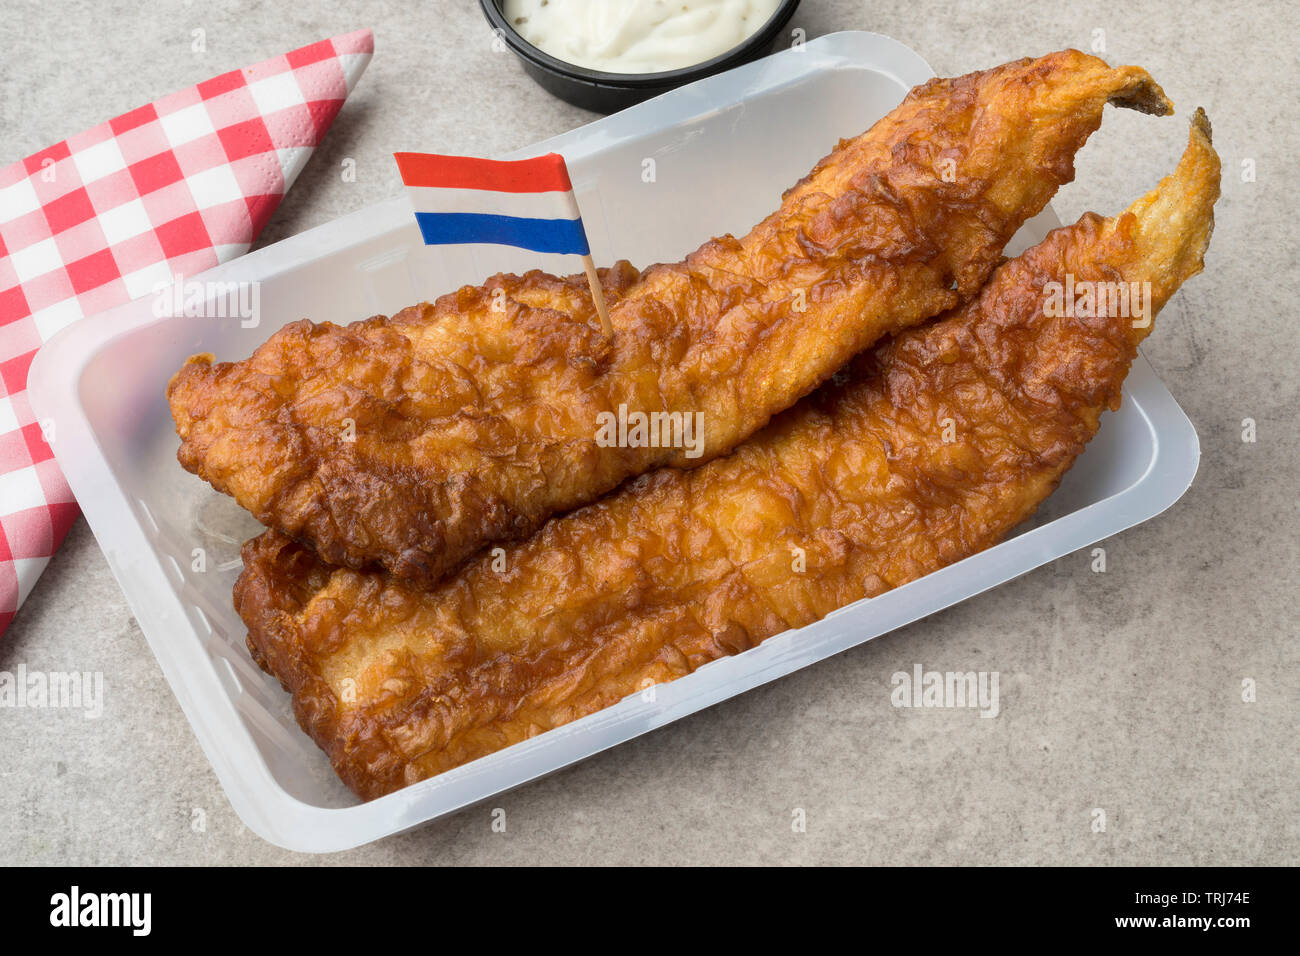 Filet de poisson frit, appelé lekkerbek en néerlandais servi avec sauce et un pavillon néerlandais Banque D'Images